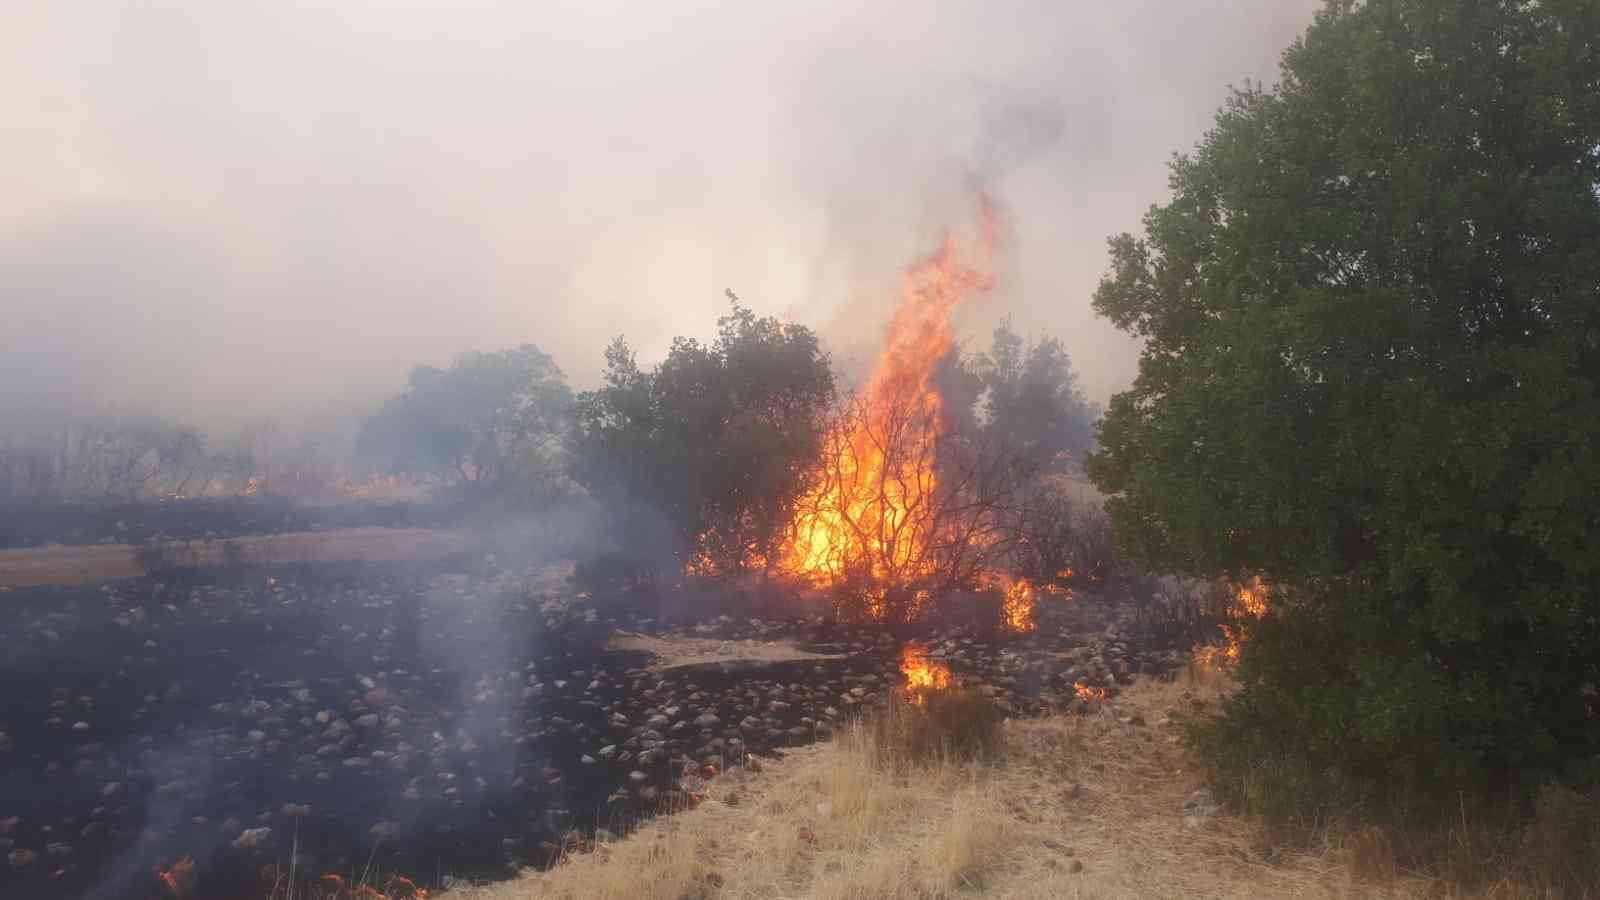 Gaziantep’te orman yangını #gaziantep